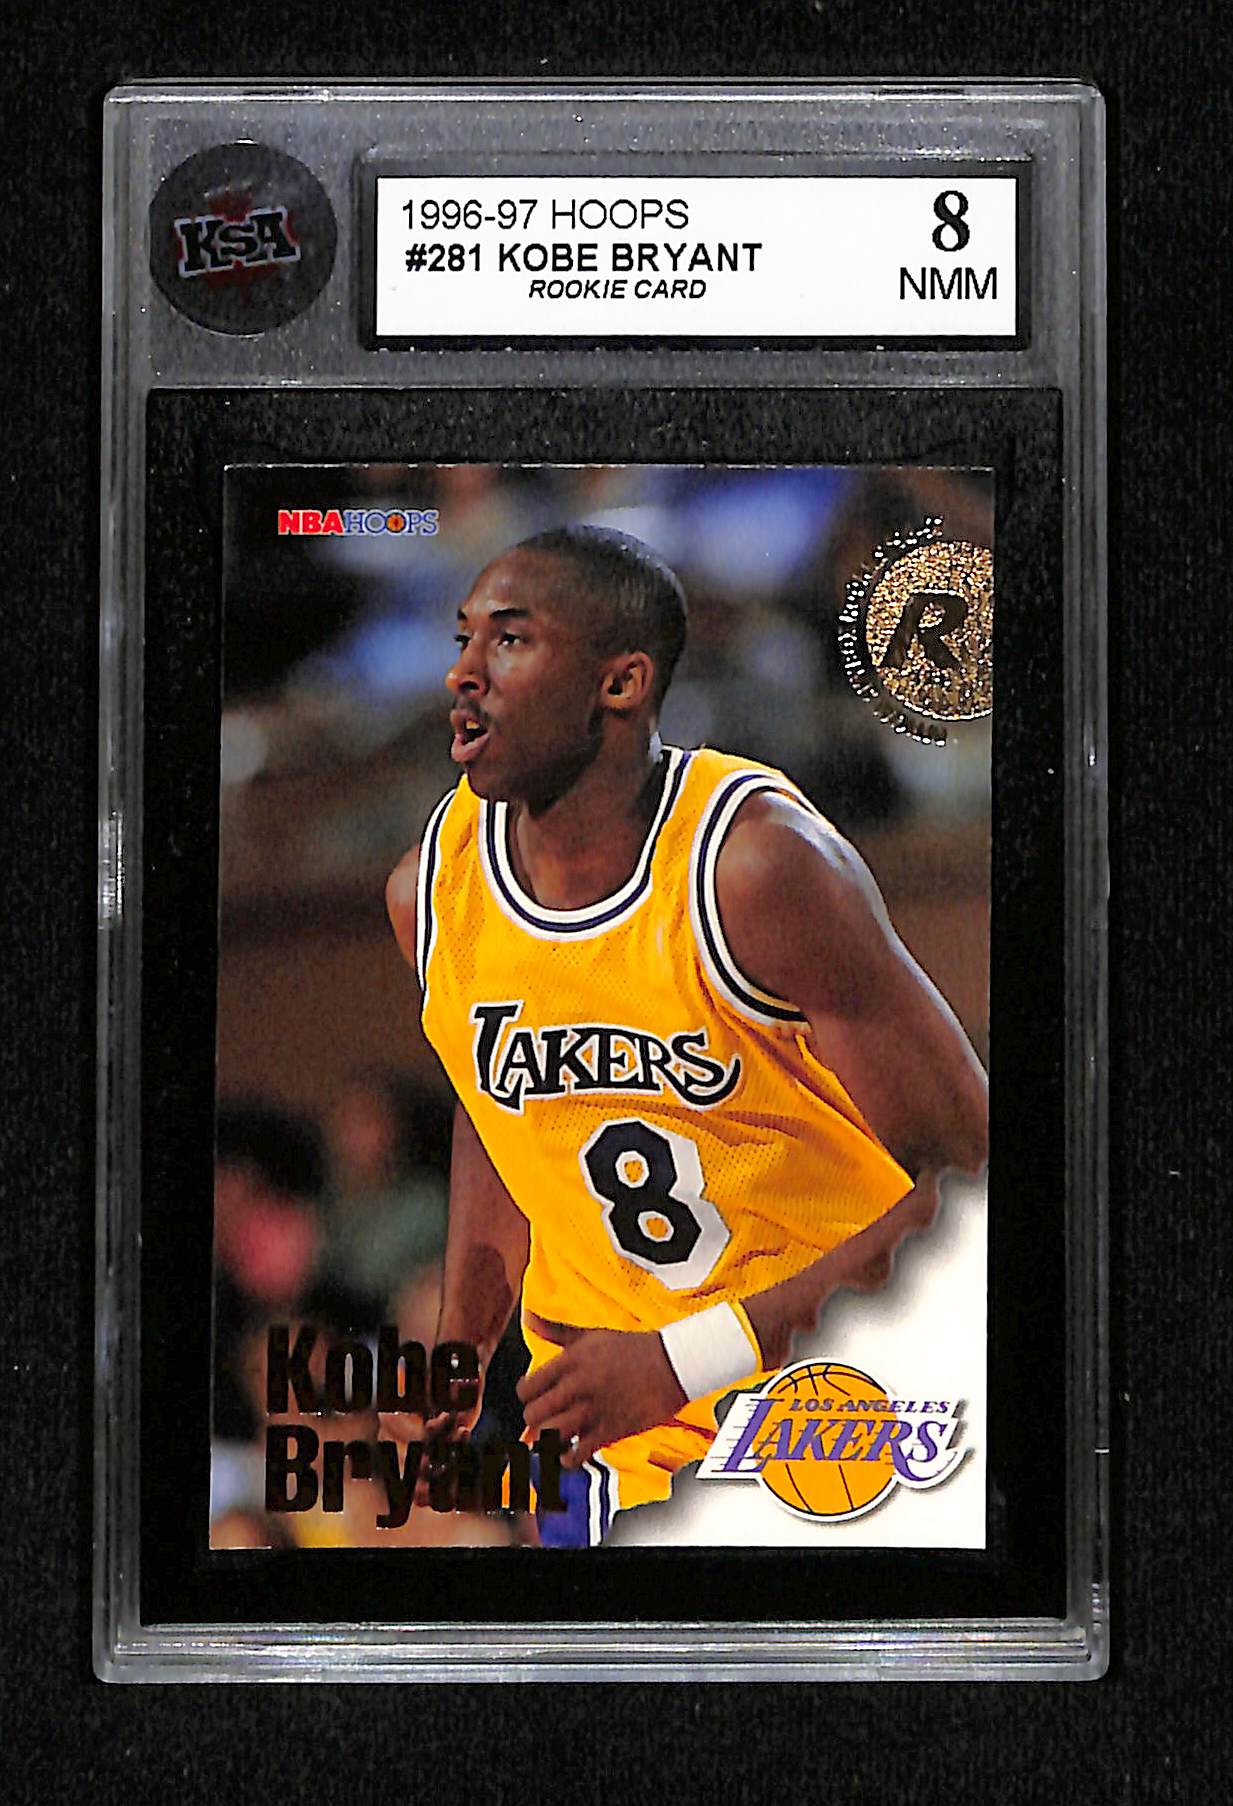 1996-97 Hoops - Kobe Bryant Rookie Card KSA 8